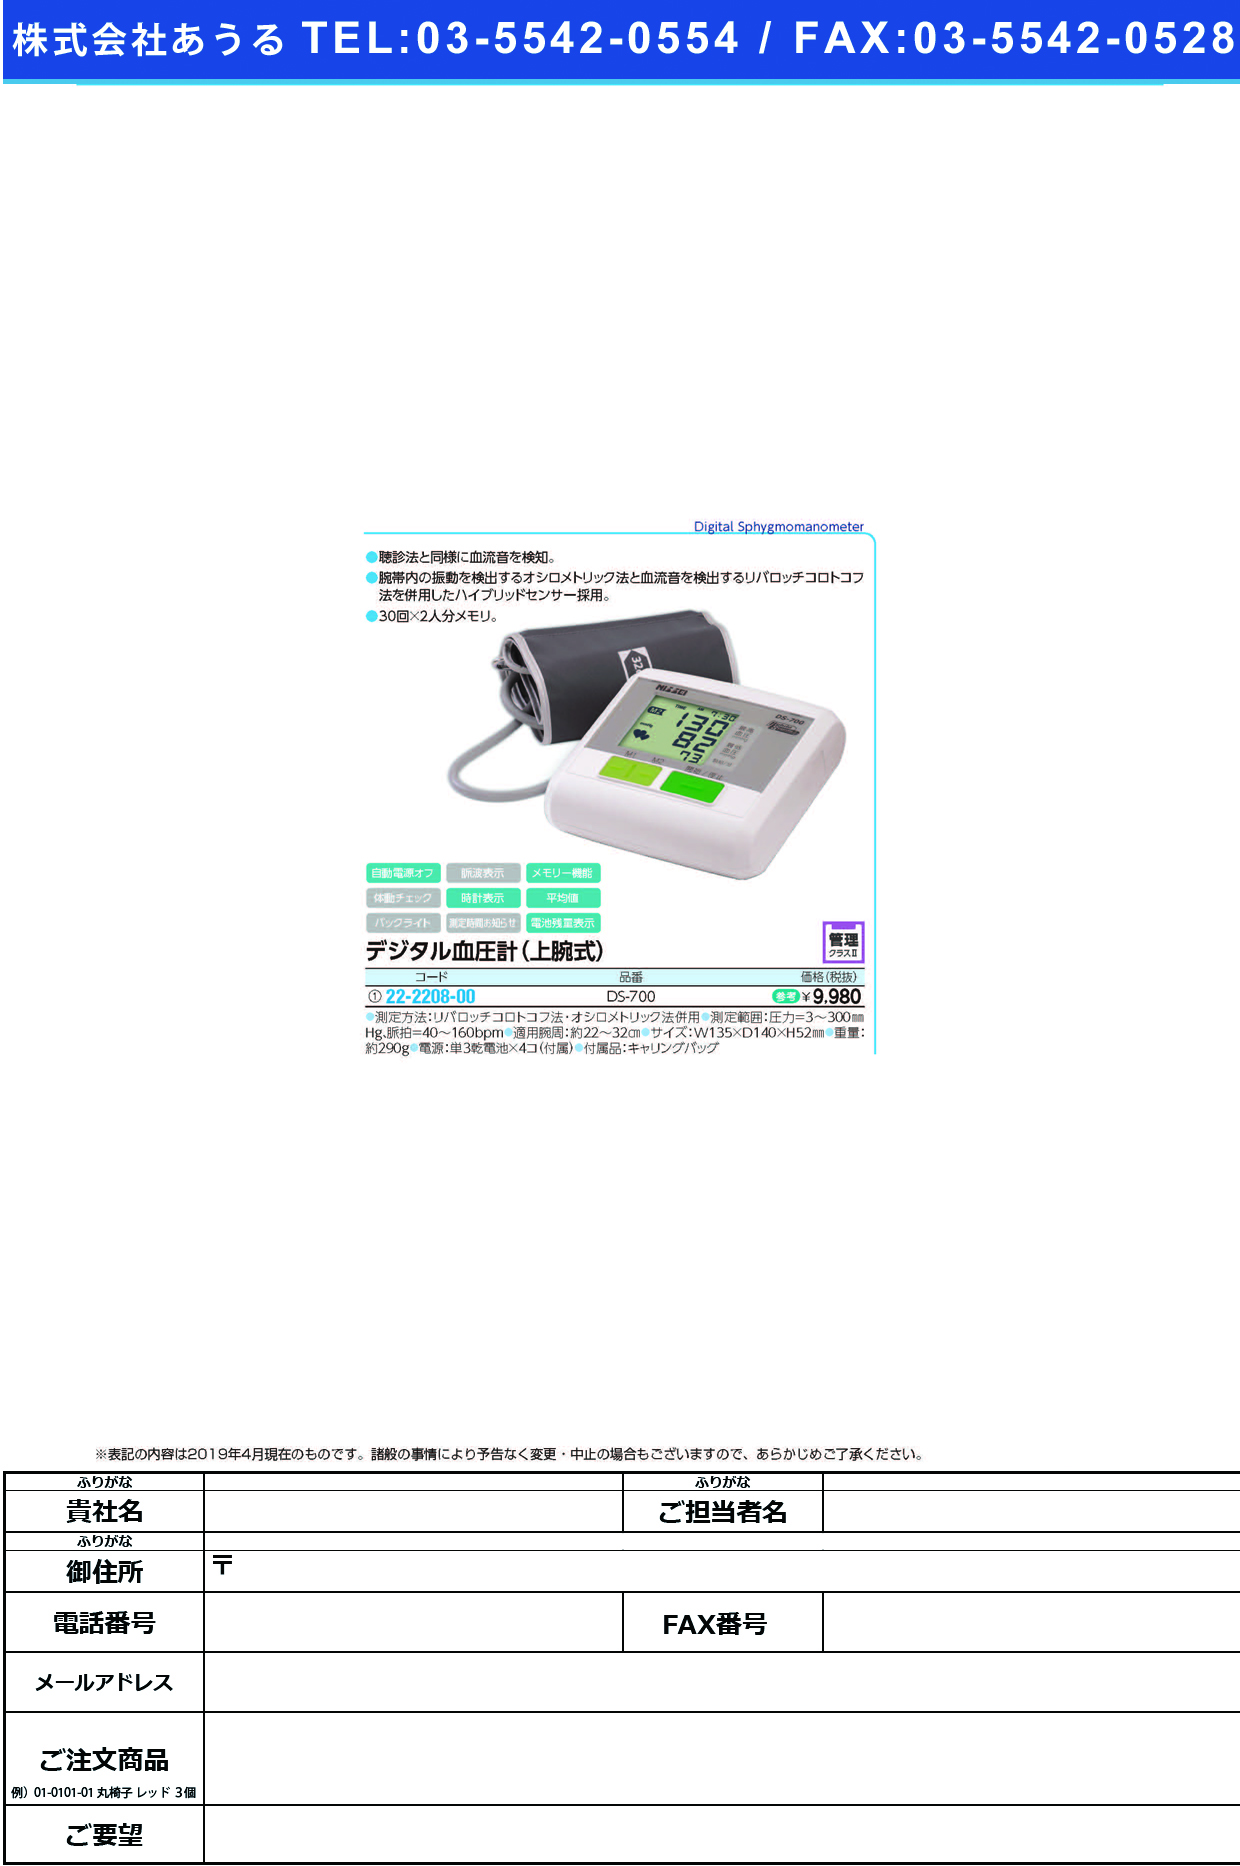 (22-2208-00)デジタル血圧計（上腕式） DS-700 ﾃﾞｼﾞﾀﾙｹﾂｱﾂｹｲ(日本精密測器)【1台単位】【2019年カタログ商品】